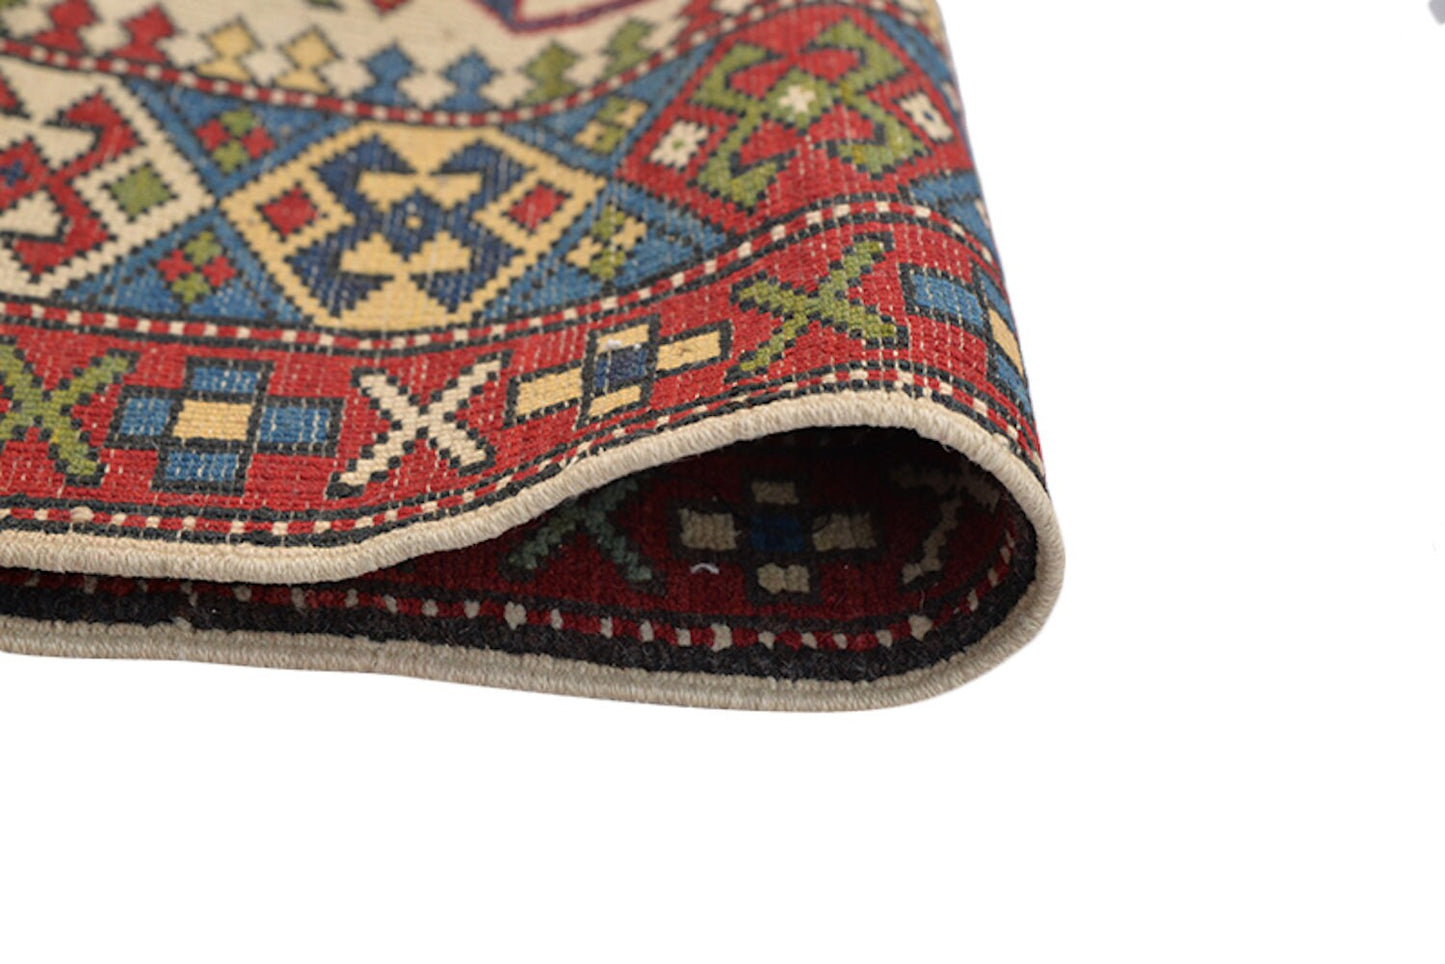 Beige Tribal Rustic Rug | Kazak Area Rug | 3 x 5 Rug | Beige Blue Red Rug | Geometric Rug | Oriental Wool Antique Rug